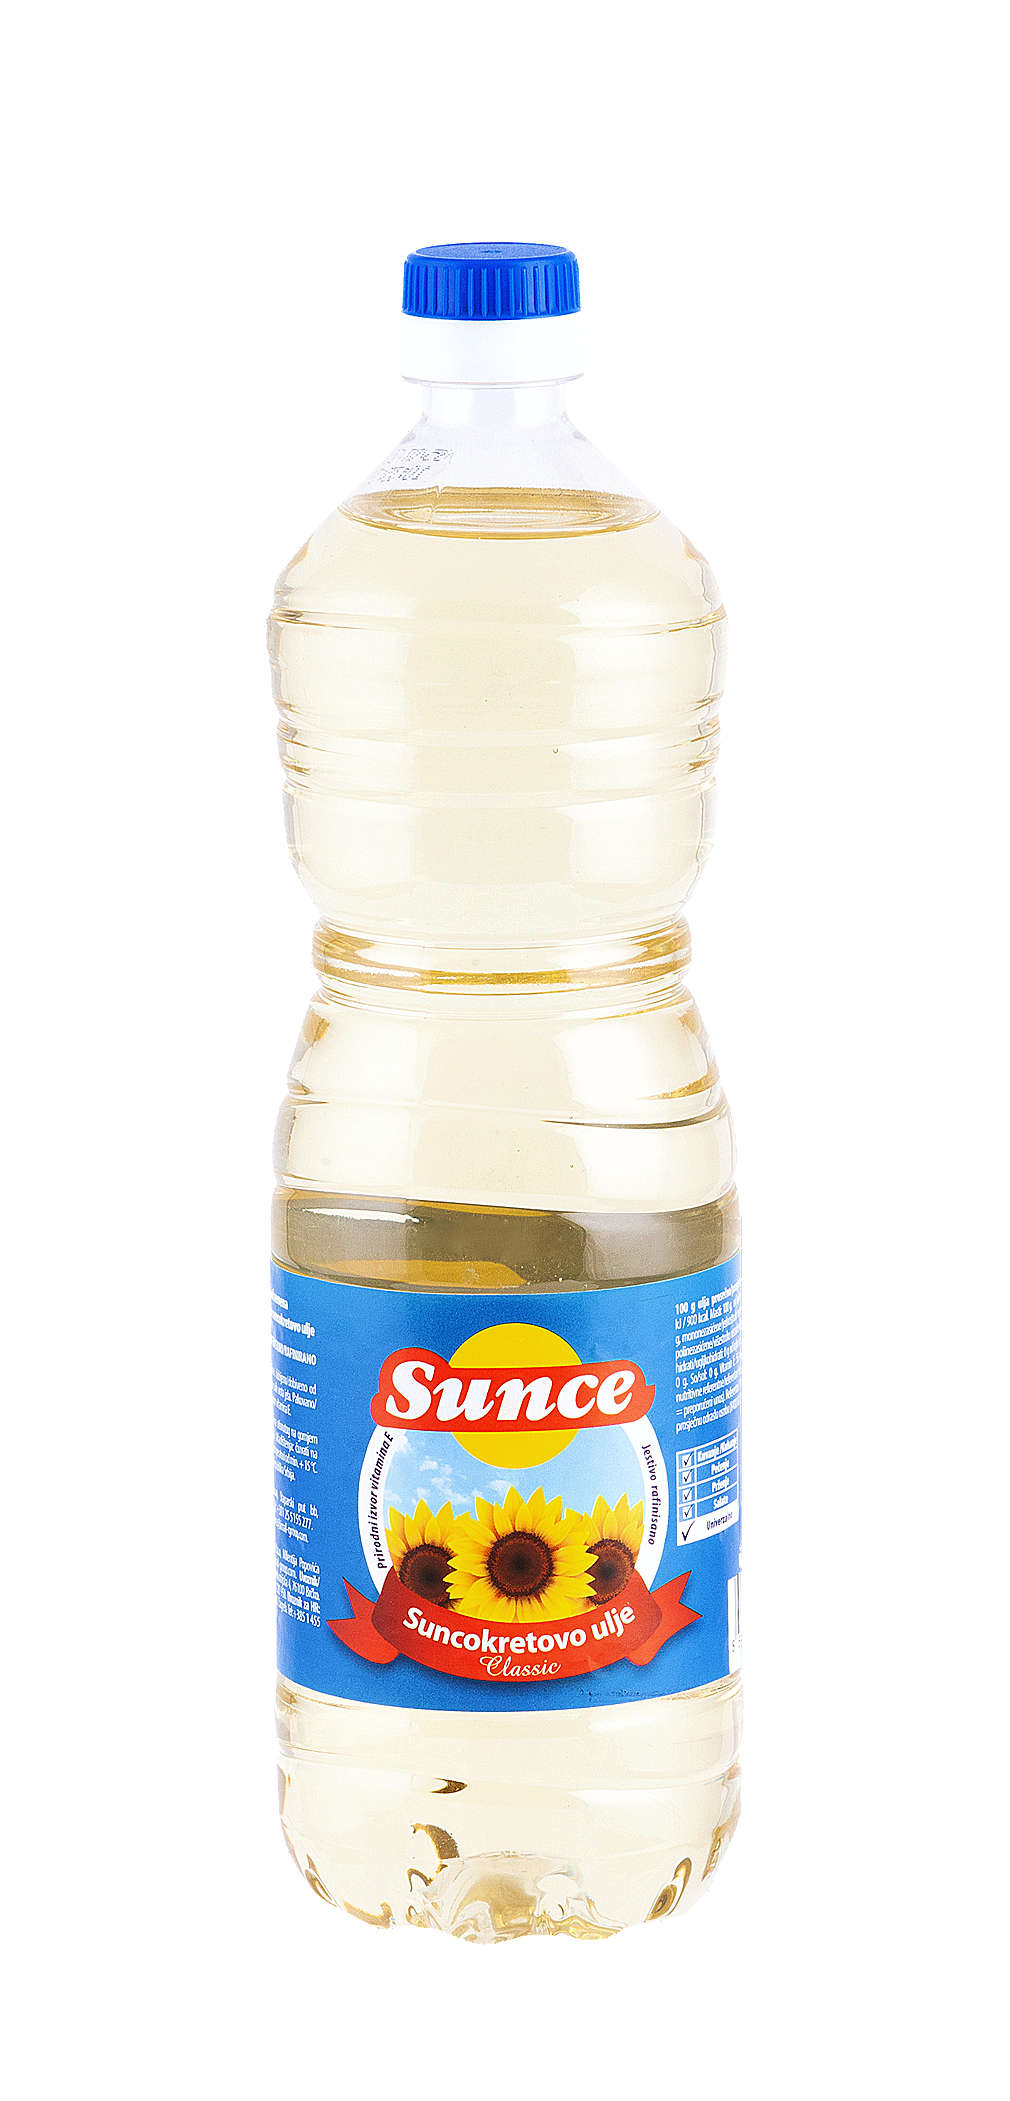 Fotografija ponude Sunce Suncokretovo ulje